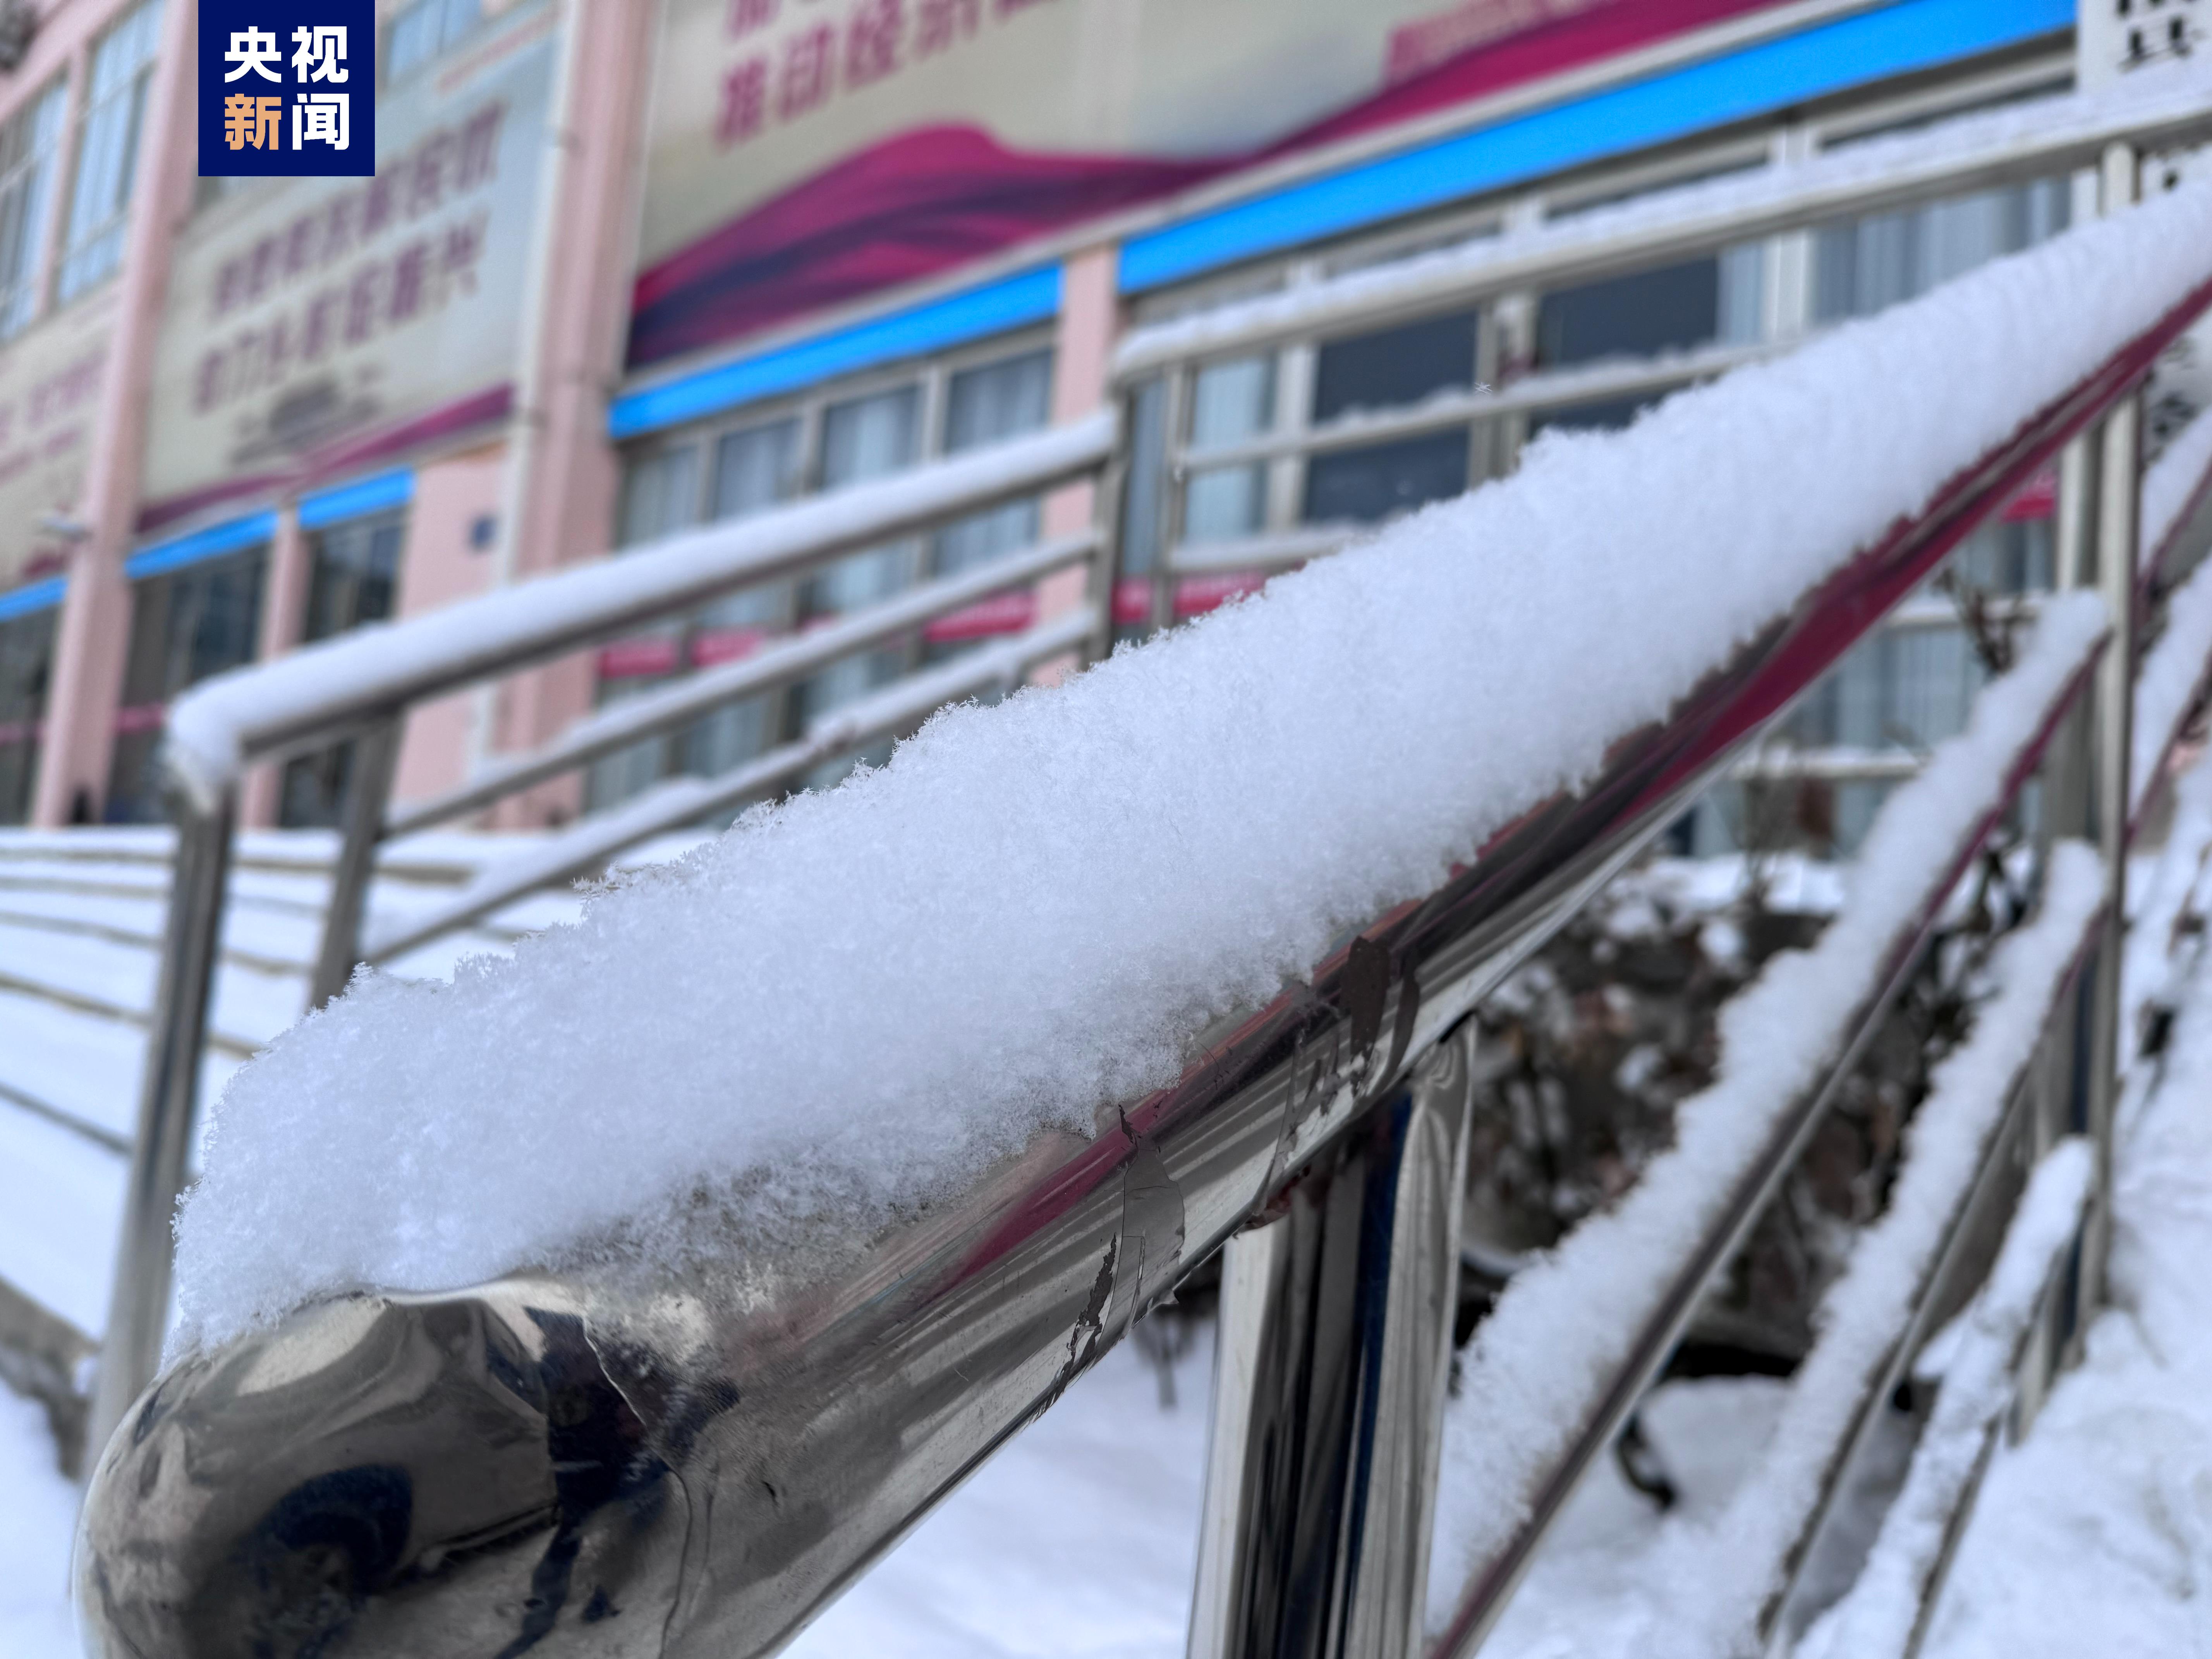 甘肃75县区表露降雪 最大积雪量8厘米 最低气温